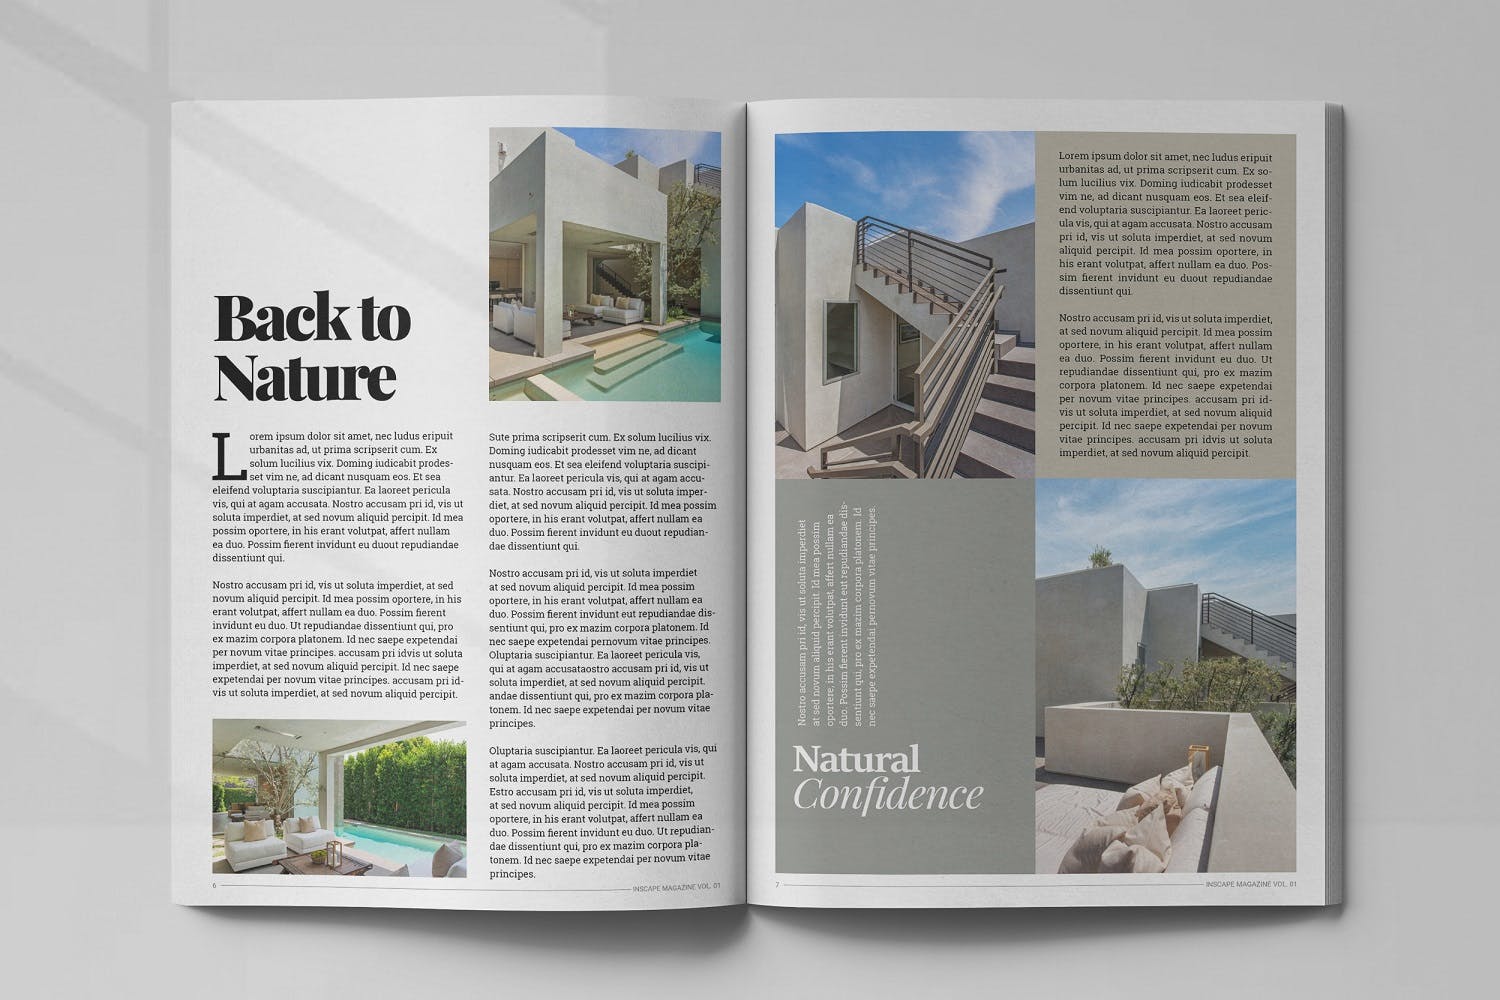 室内设计主题第一素材精选杂志排版设计模板 Inscape Interior Magazine插图(3)